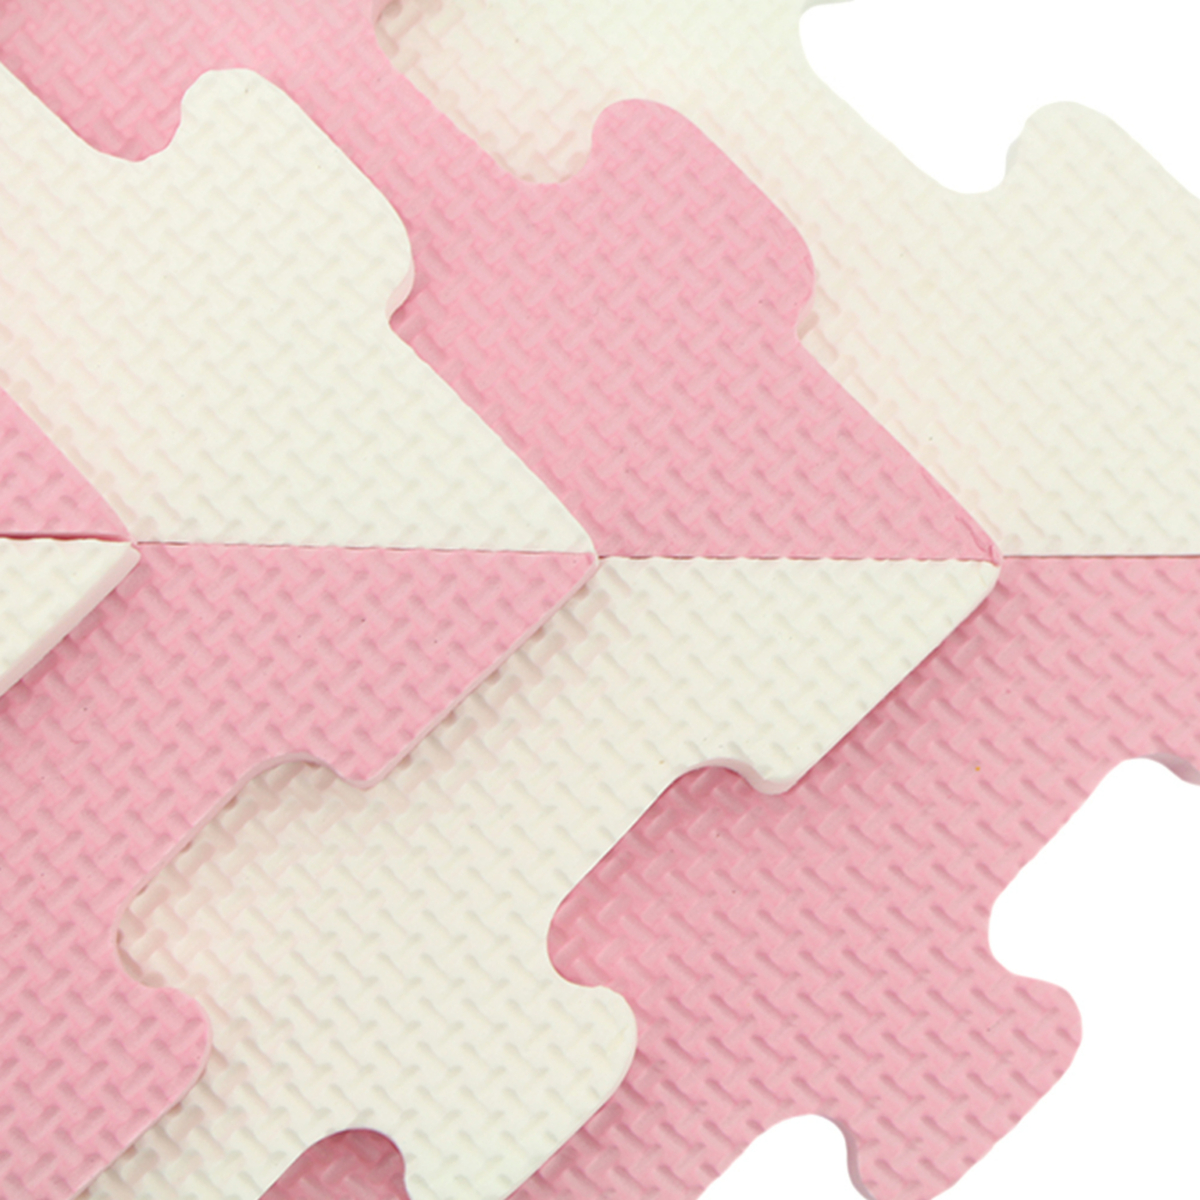 Sunta Puzzle Mat, 16 pcs, Pink/White, 1018B3-B PK/WHT